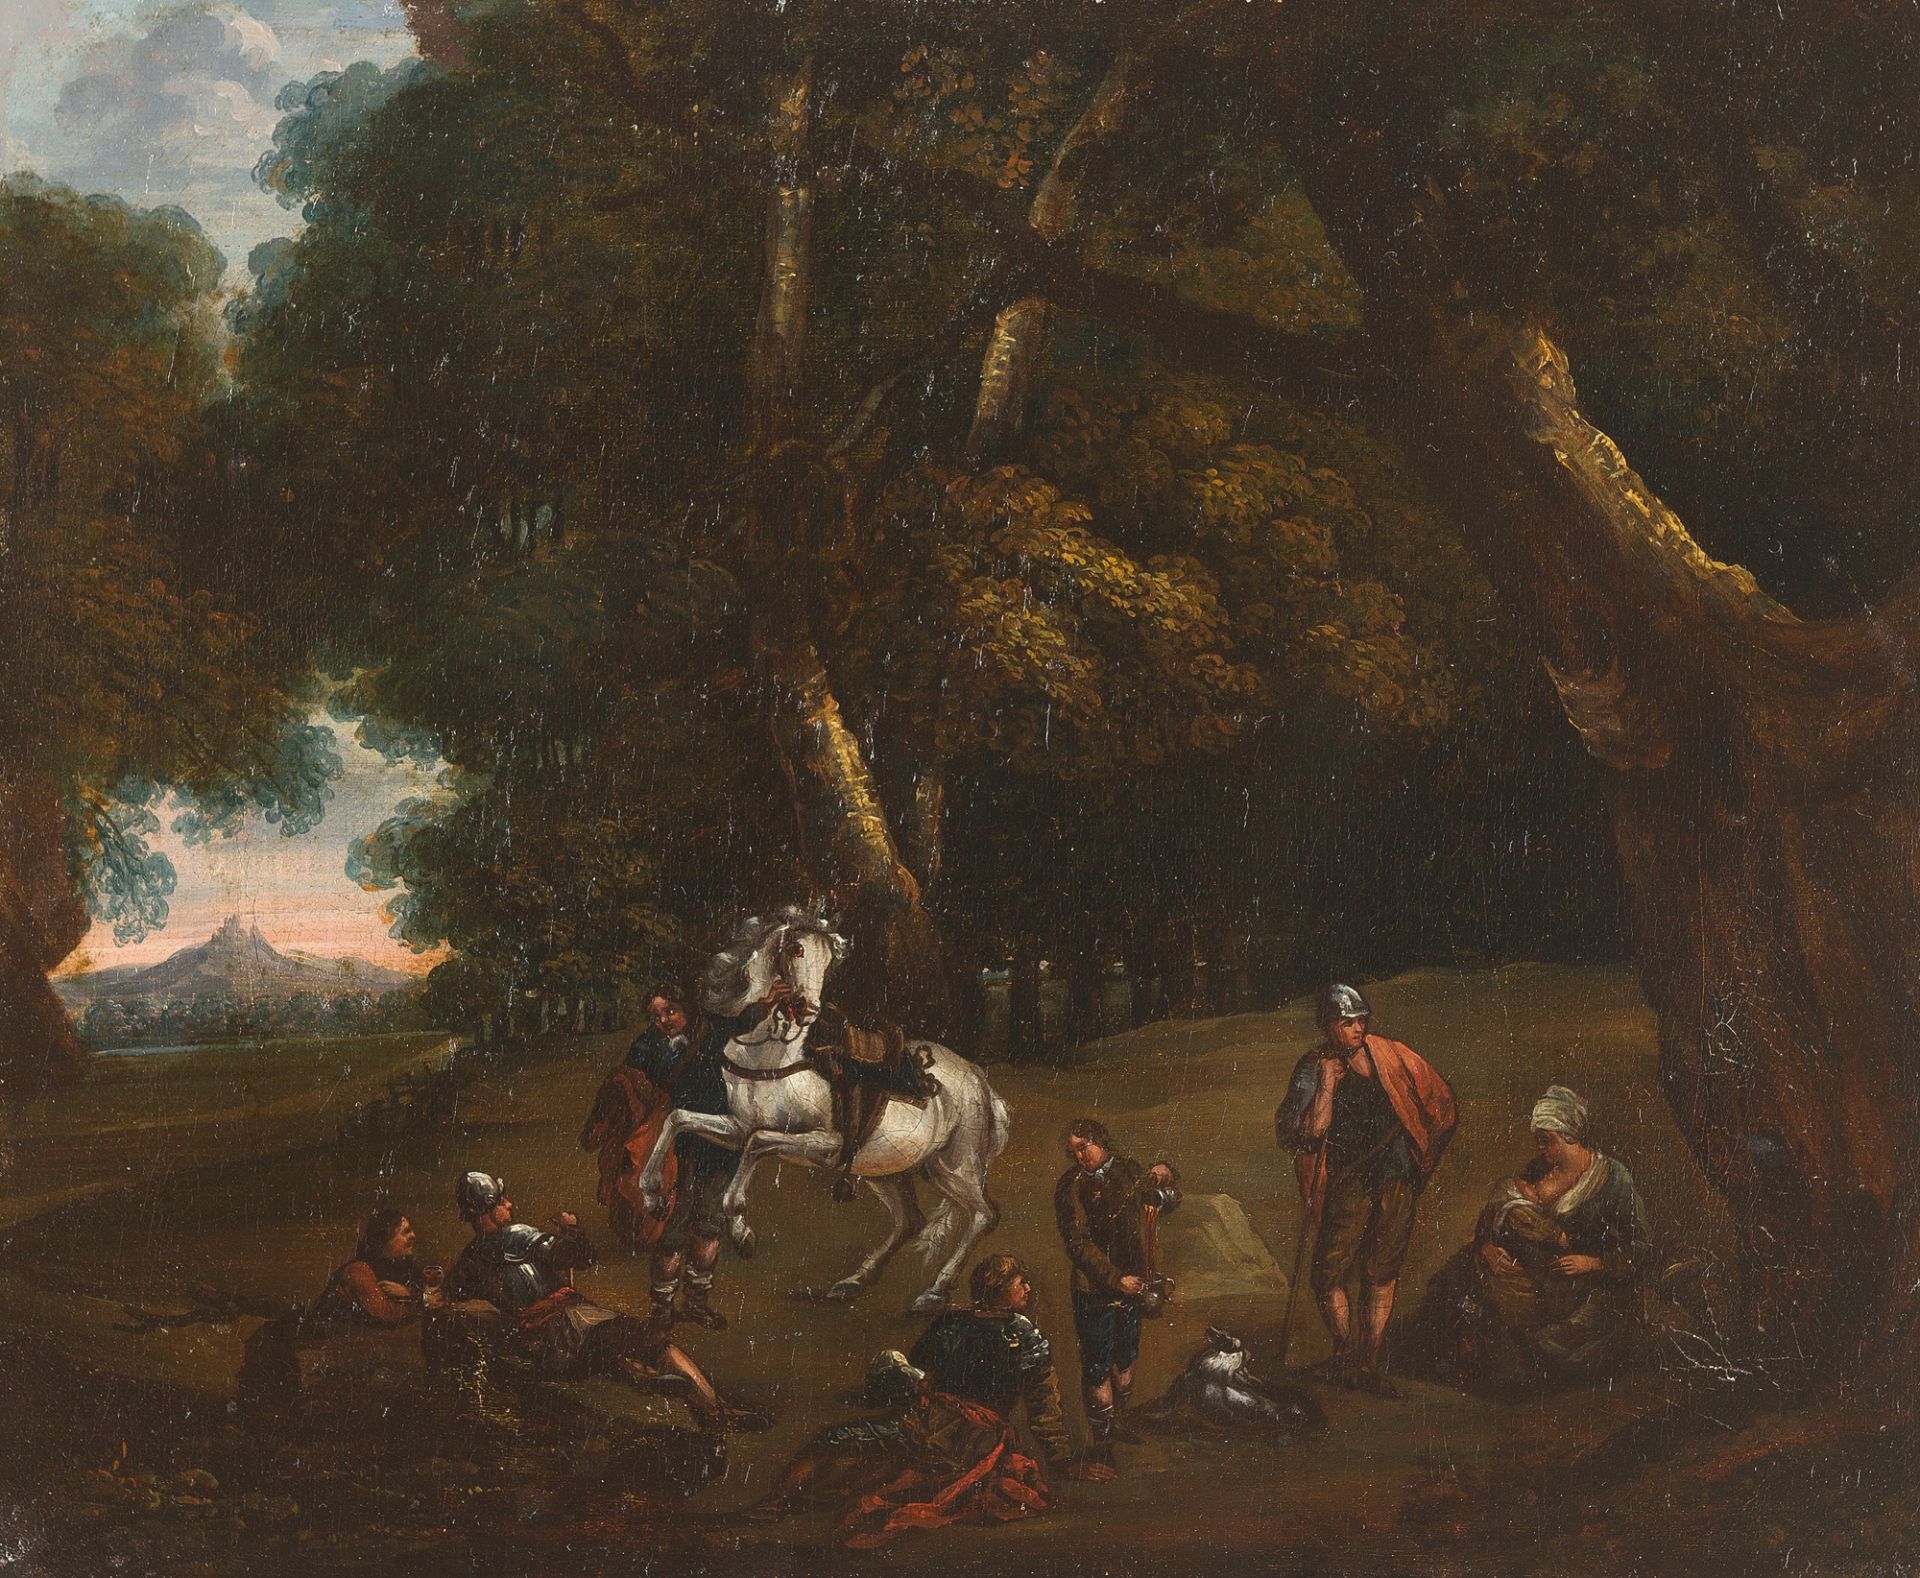 JEAN-LOUIS DEMARNE (UMKREIS)
1754 Brüssel - Battignolles 1829

Die Rast.

Öl auf Leinwand,